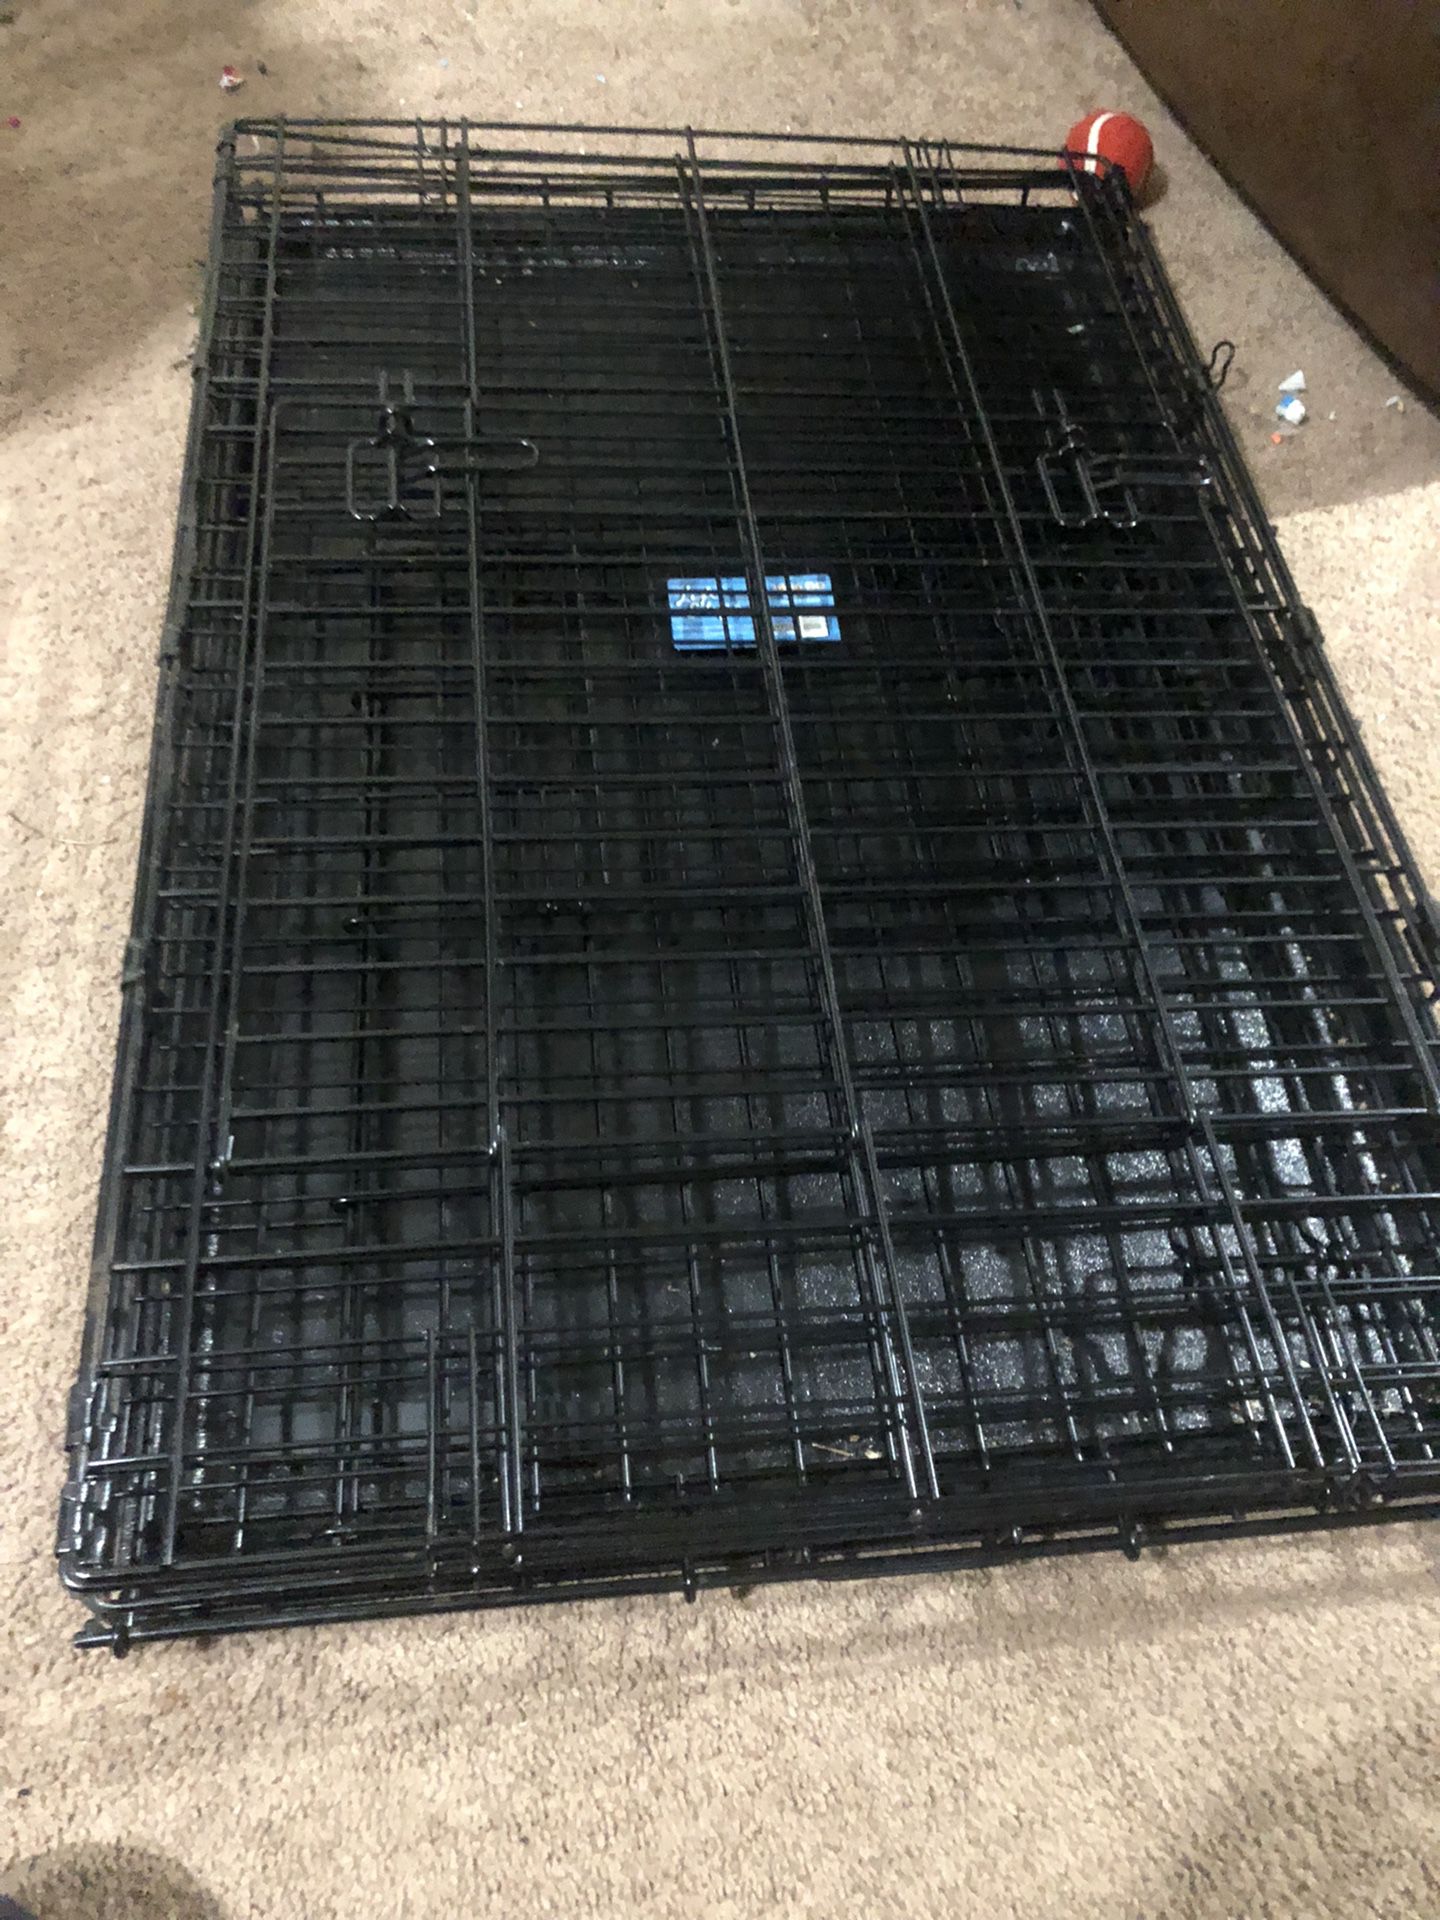 Medium-Large Dog Crate